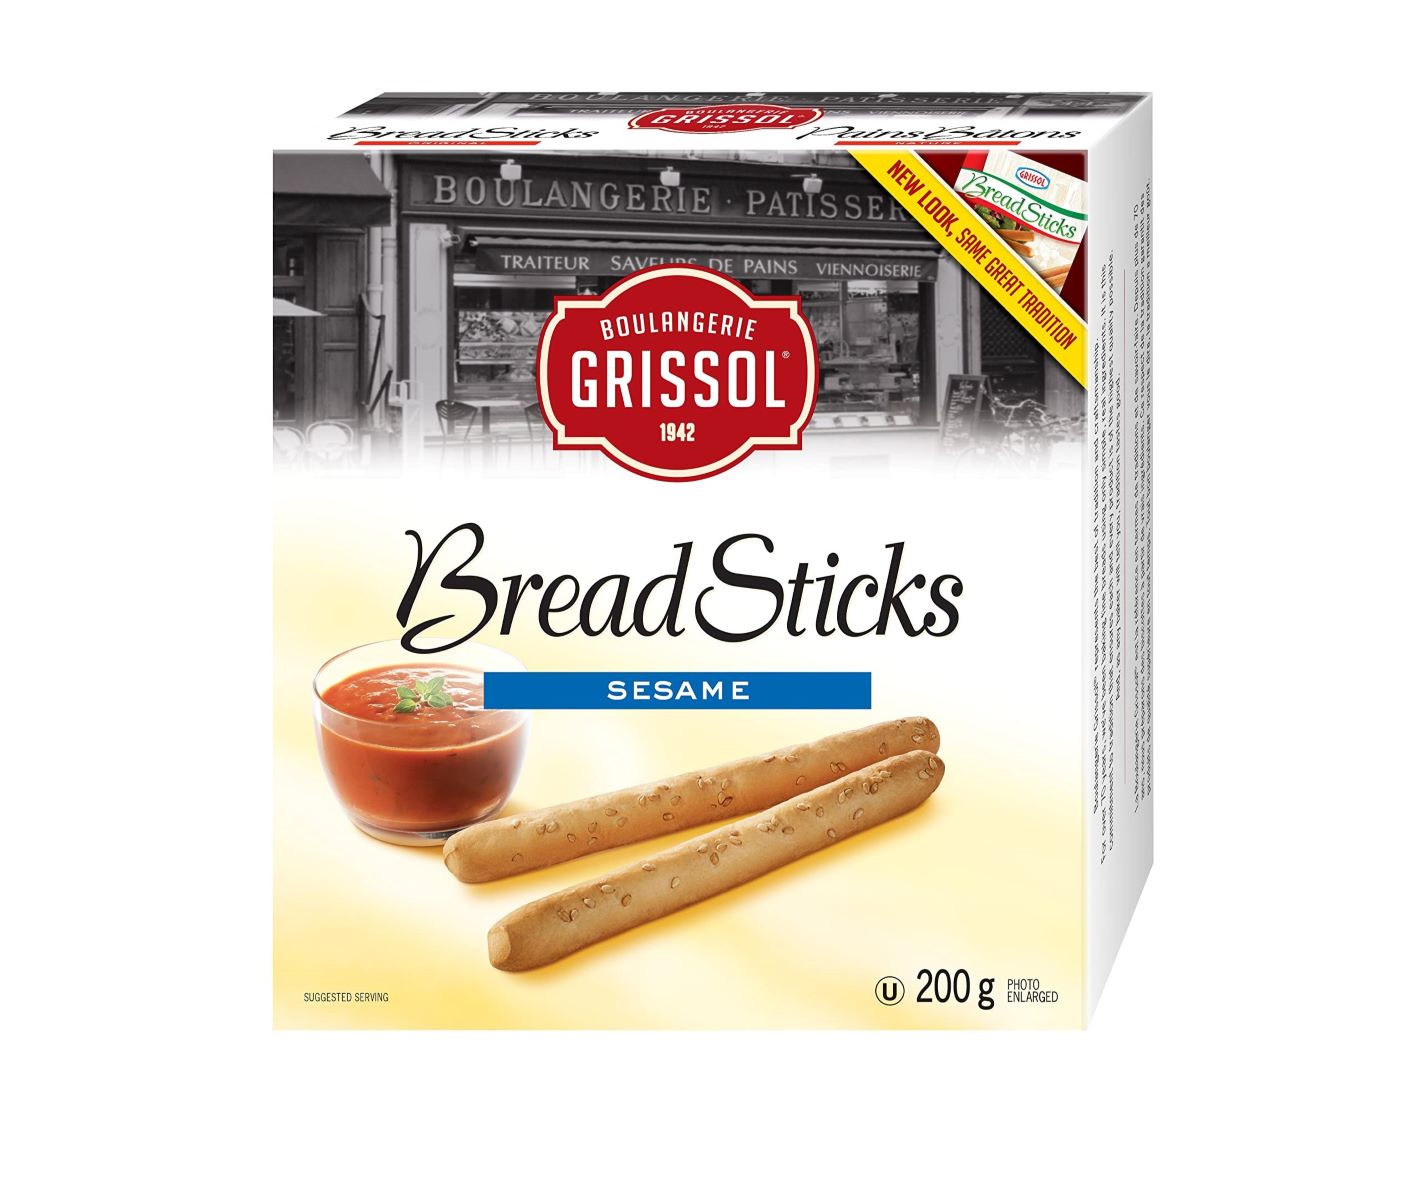 18-boulangerie-grissol-bread-sticks-sesame-nutrition-facts